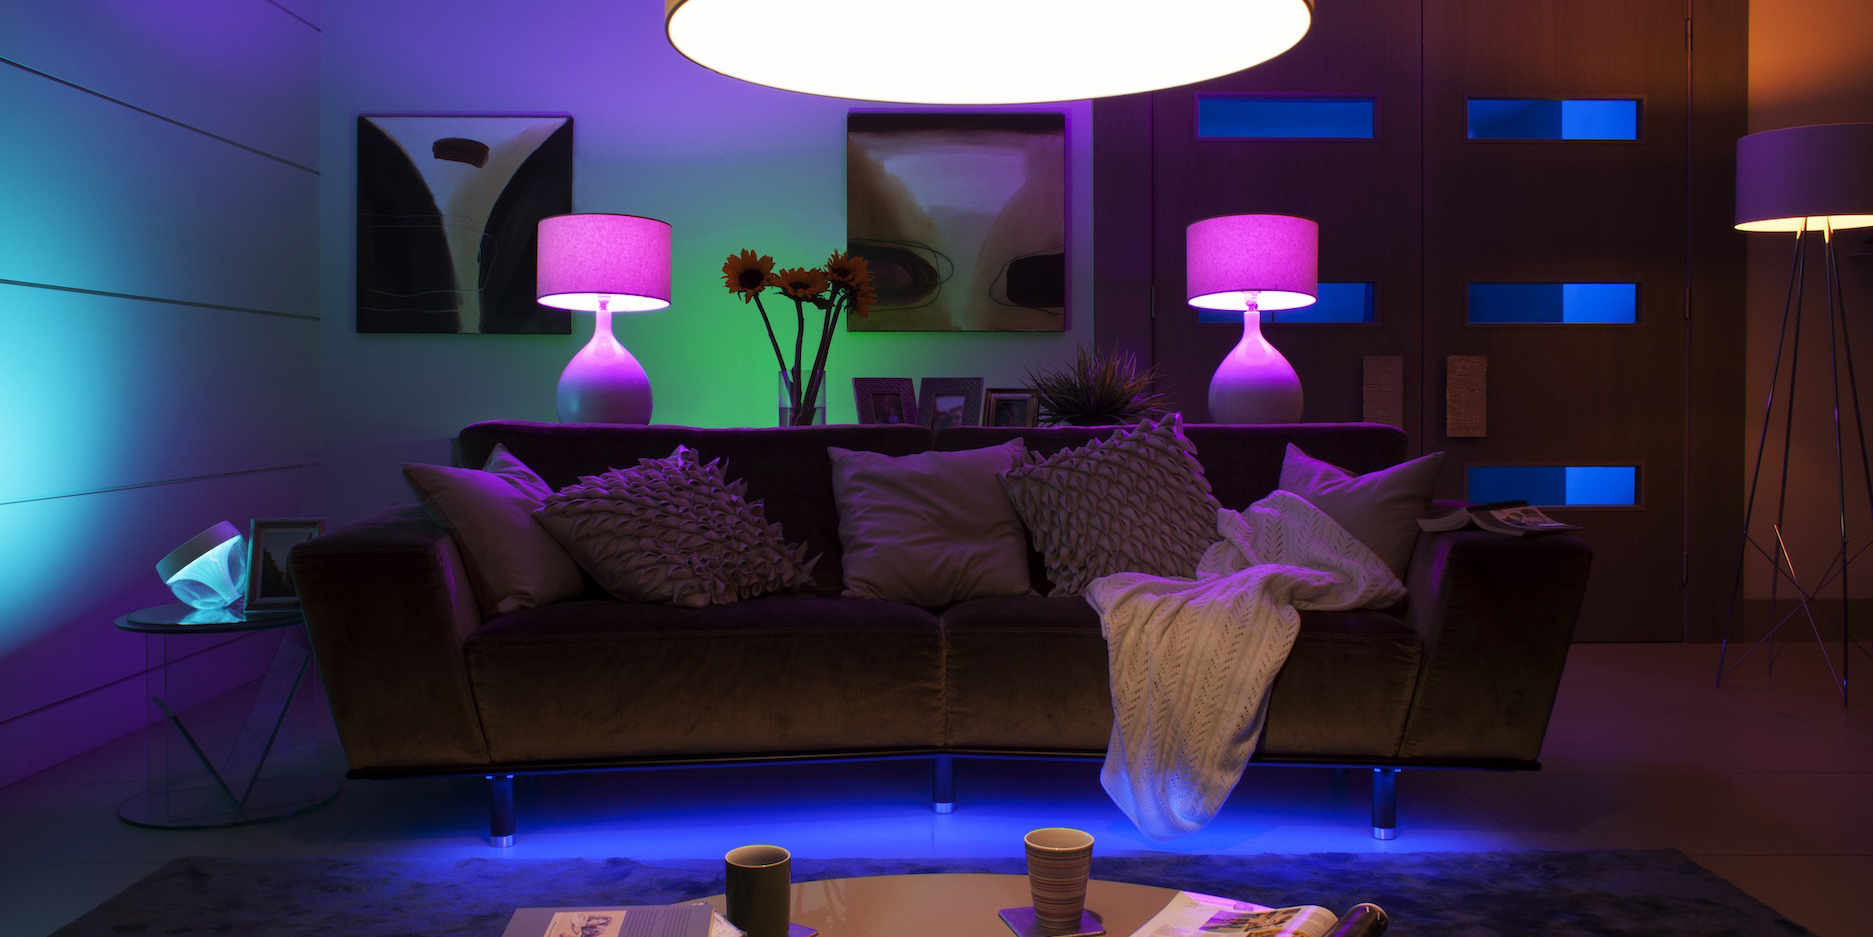 vijf redenen waarom je geen philips hue lampen in huis moet halen